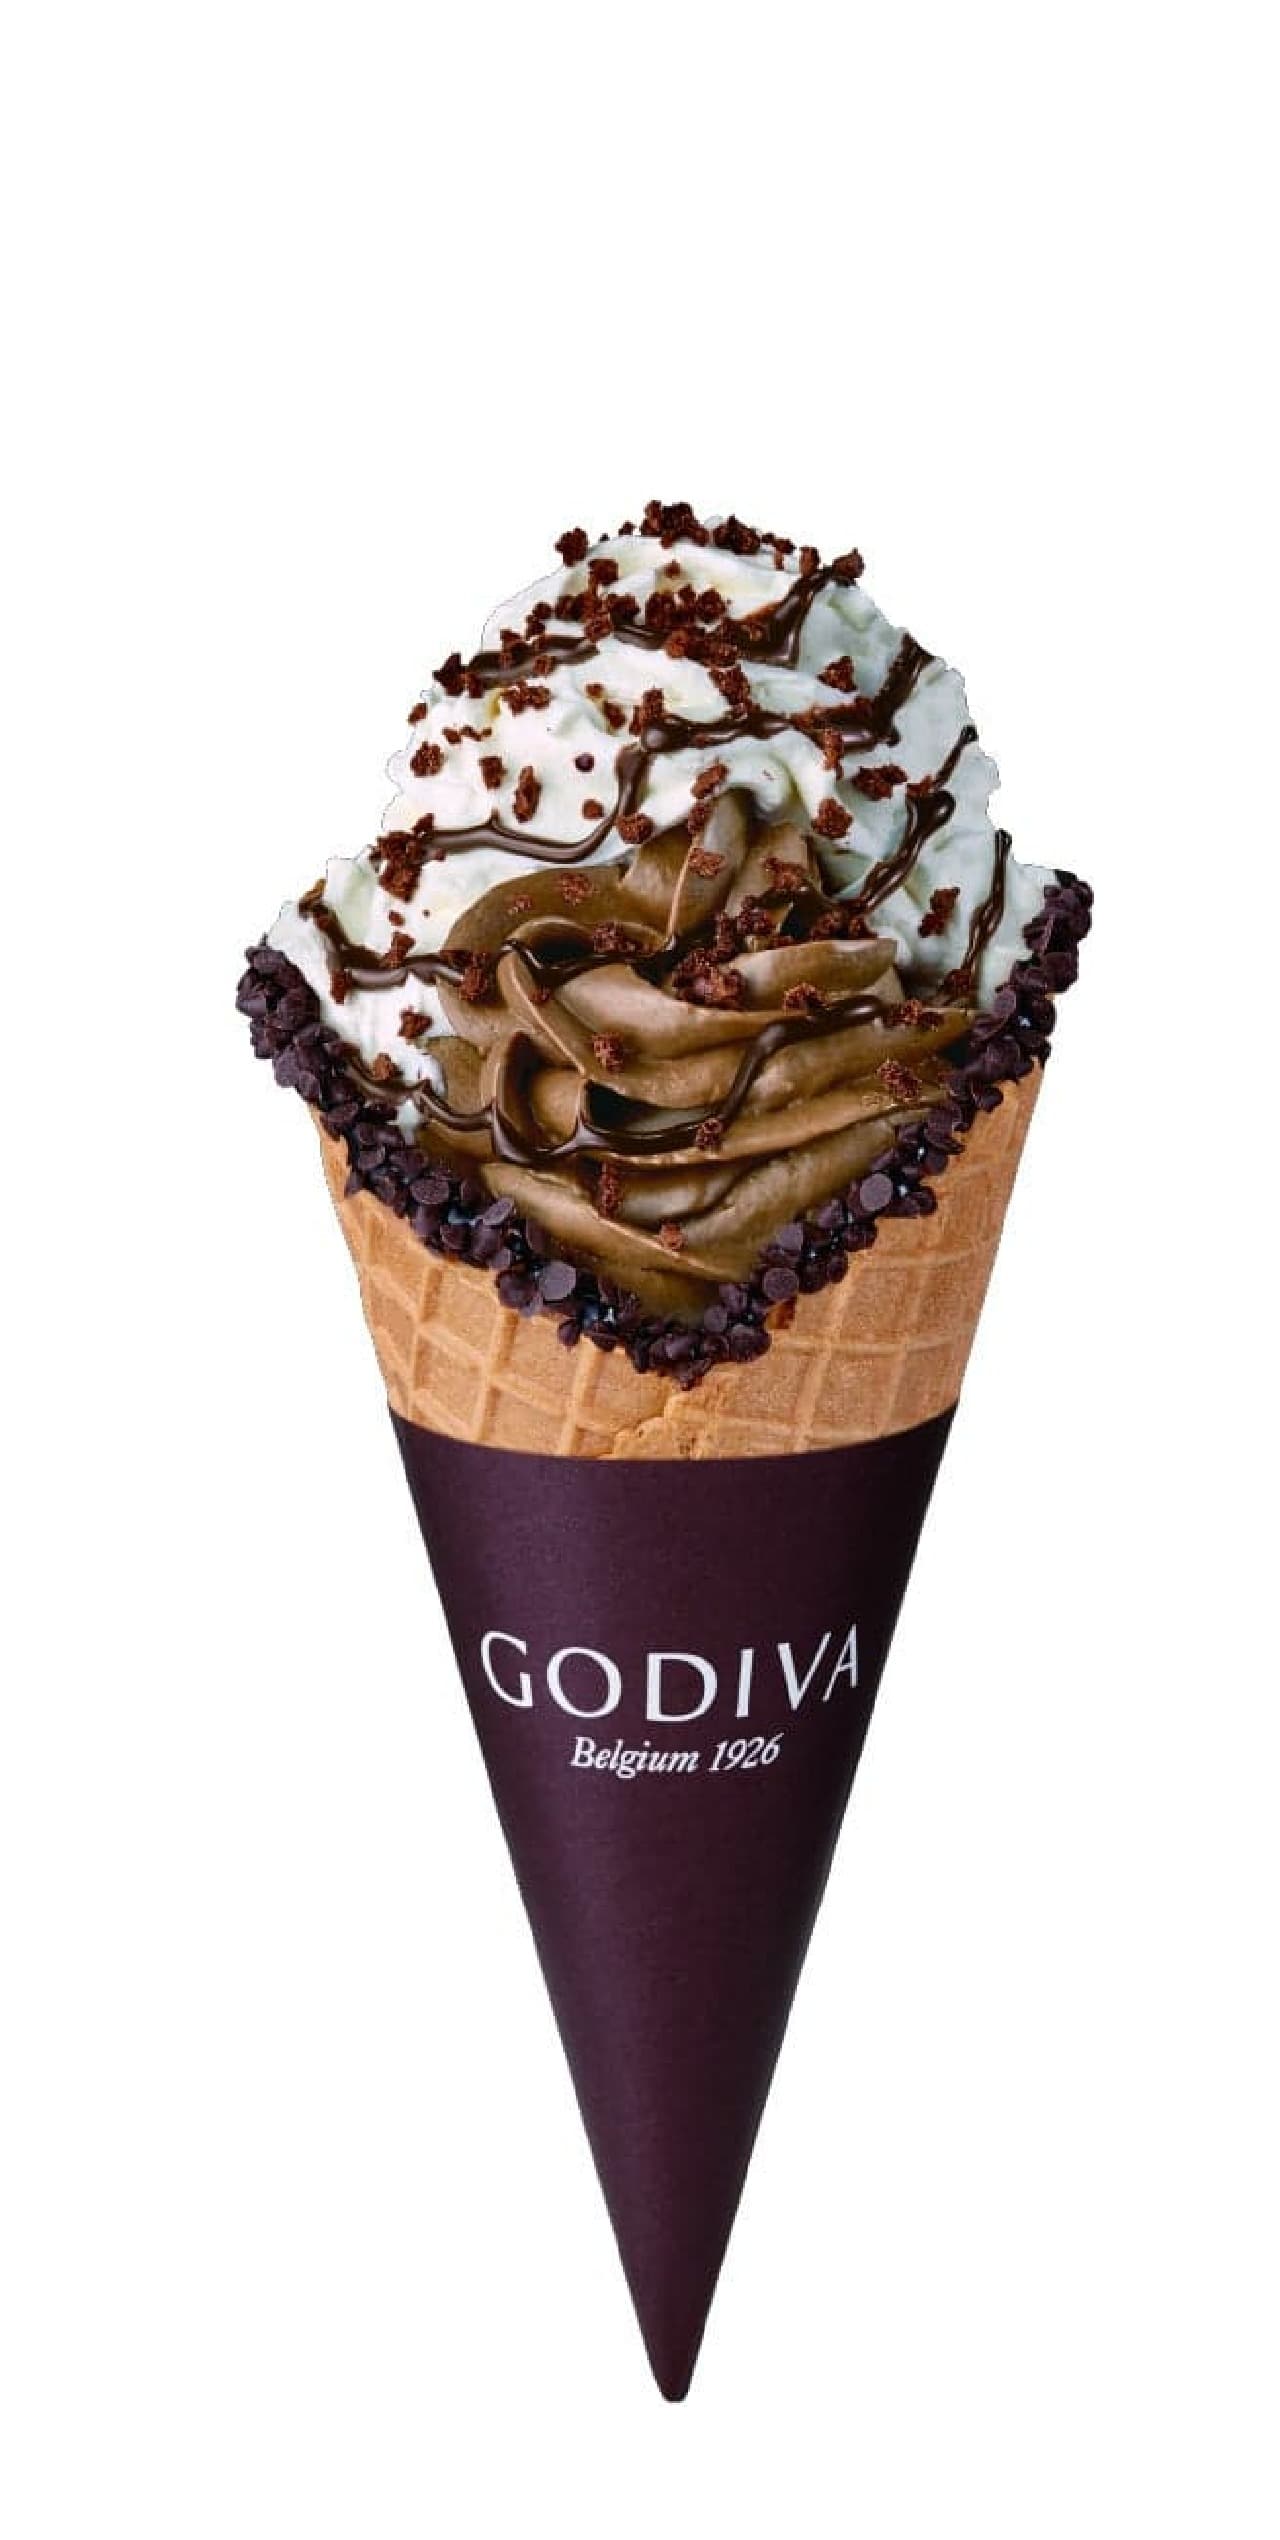 ゴディバから通常サイズの約1.6倍ボリュームのチョコレートソフトクリーム「メガパフェ チョコレート」が4月26日に期間限定で新登場 画像2